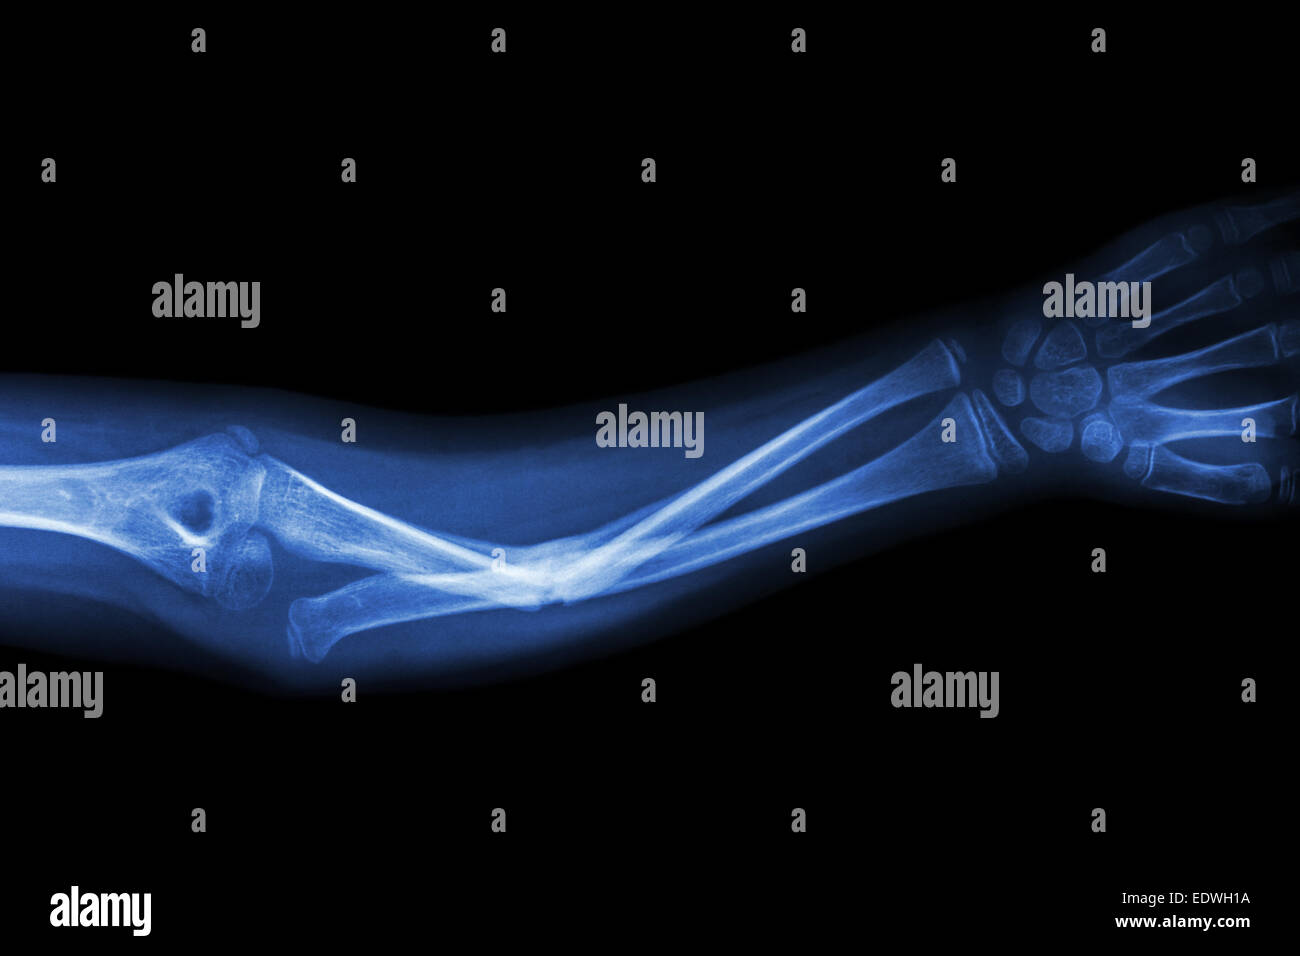 Bruch des ulnaren Knochen (Unterarm-Knochen) Stockfoto